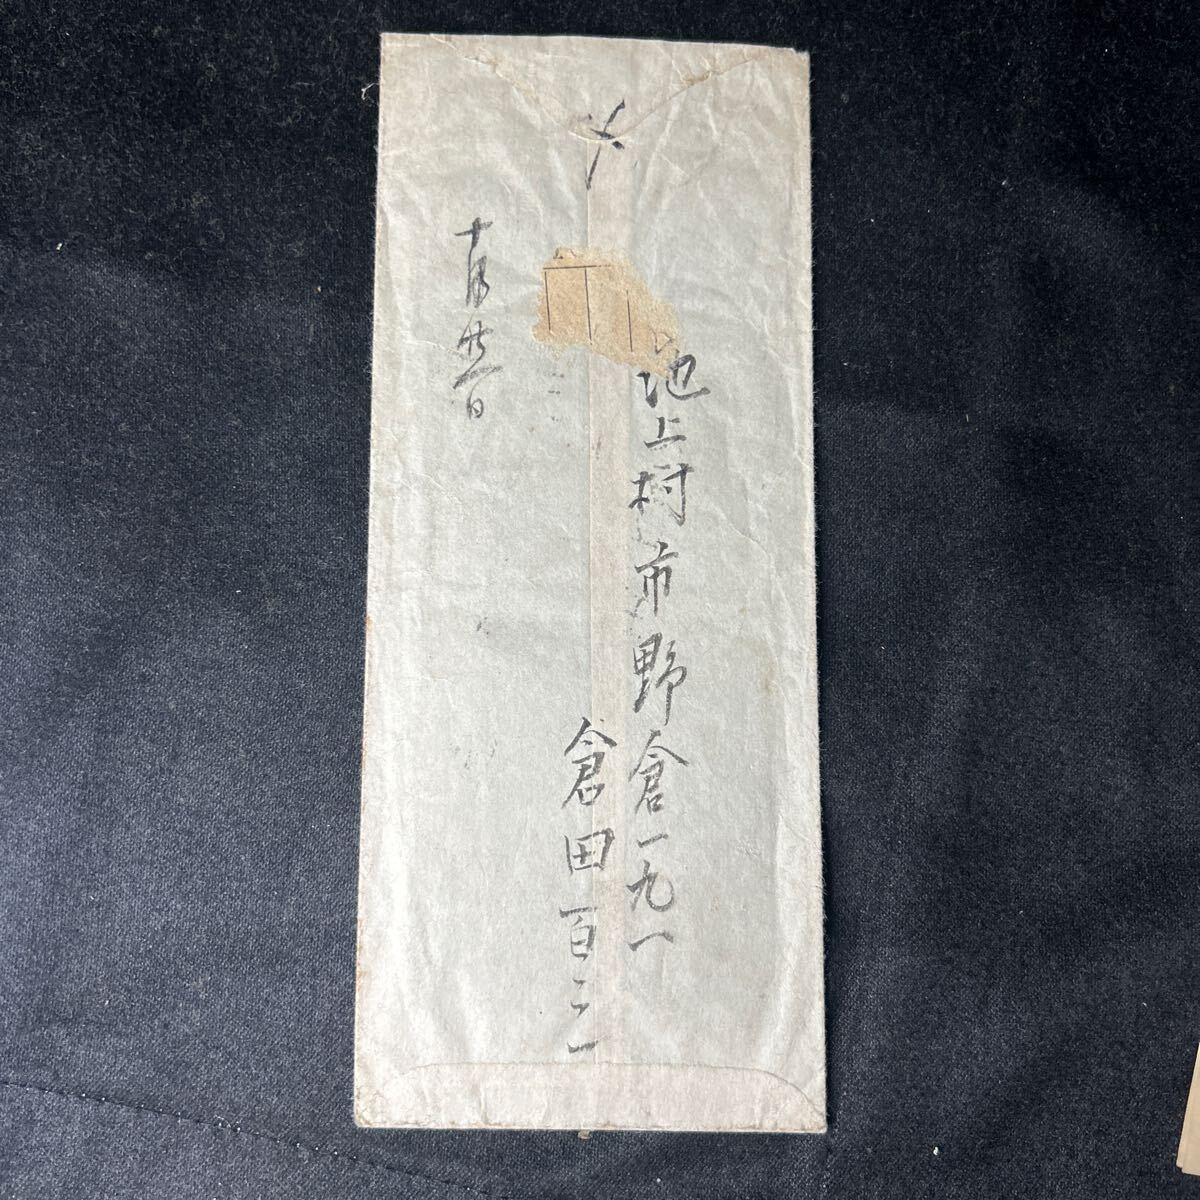  автограф документ . Kurata Hyakuzo . автор критика дом Miyazaki длина 2 адресован автограф письмо Showa первый период бумага для писем конверт 